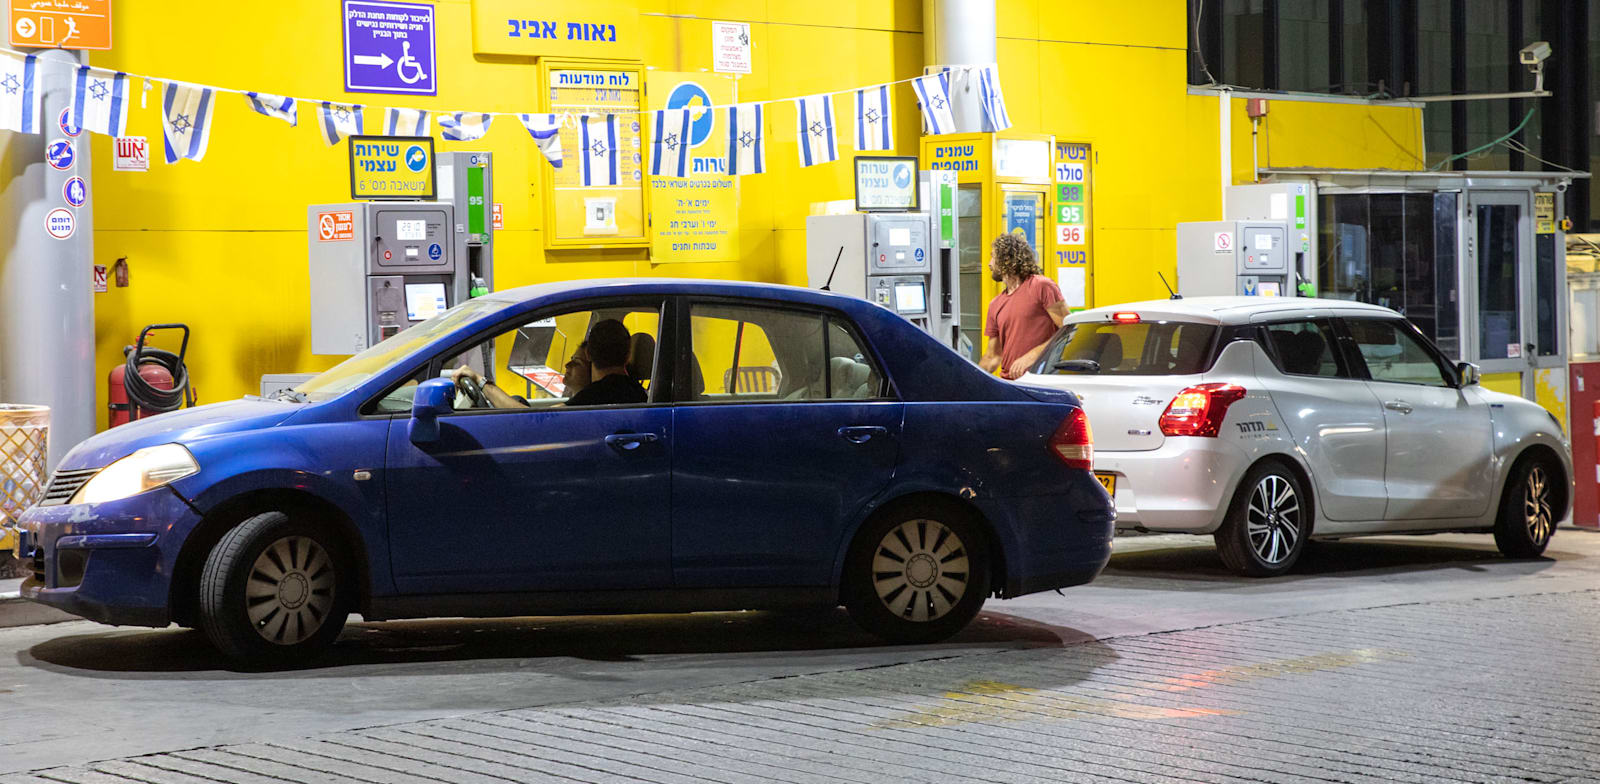 מכוניות ממלאות דלק. נטל המס על הנהגים בישראל שובר שיאים / צילום: כדיה לוי